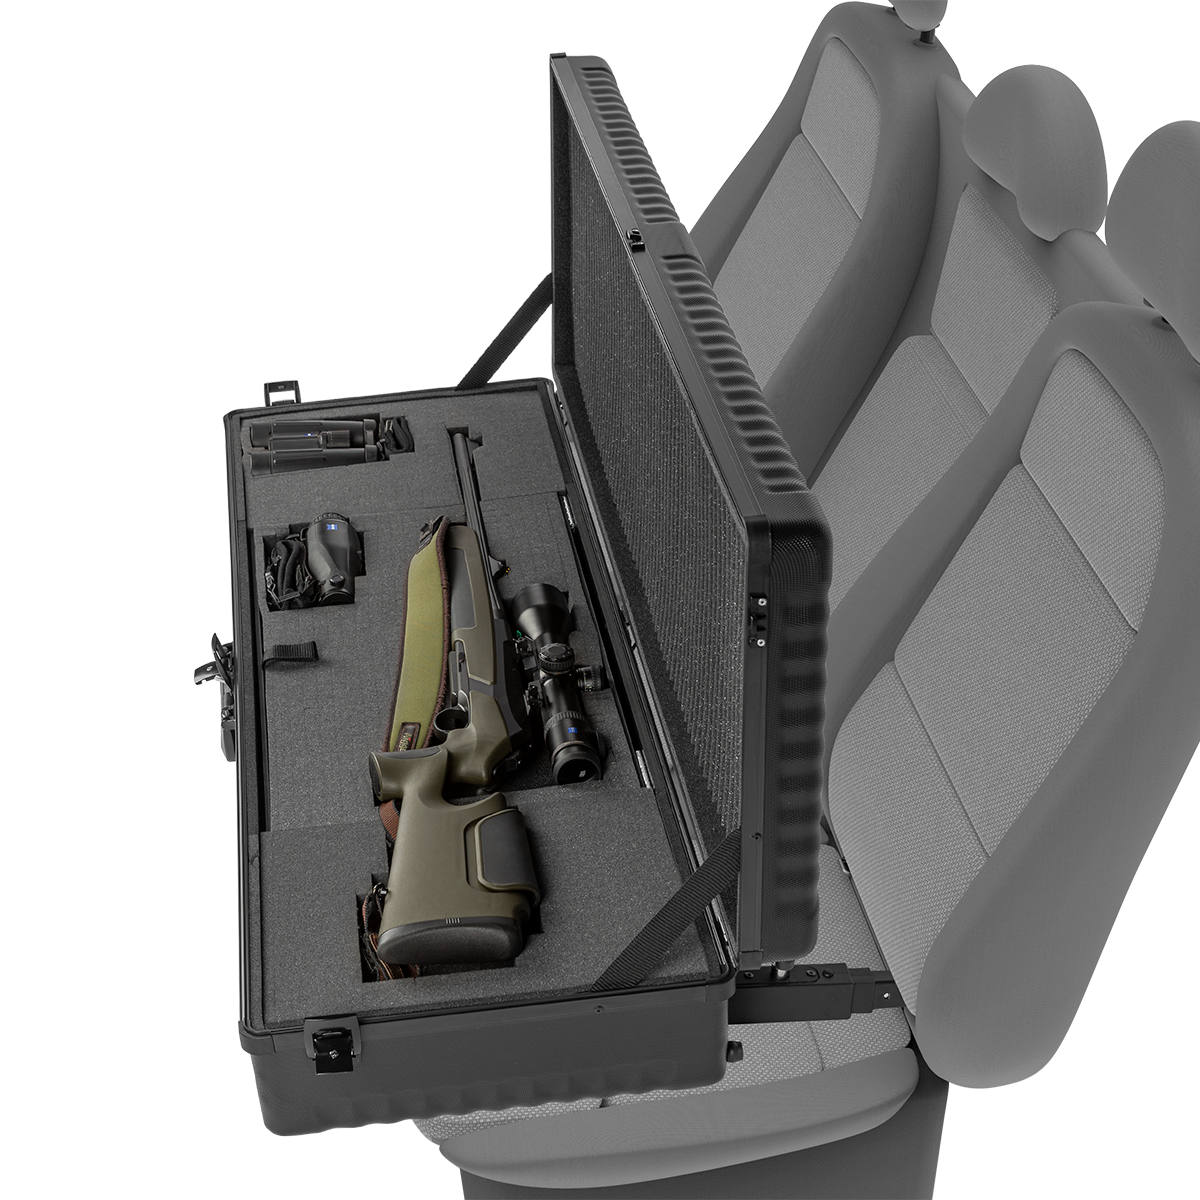 Waffenkoffer mit Isofix-Halterung - Sicherer Transport der Waffe